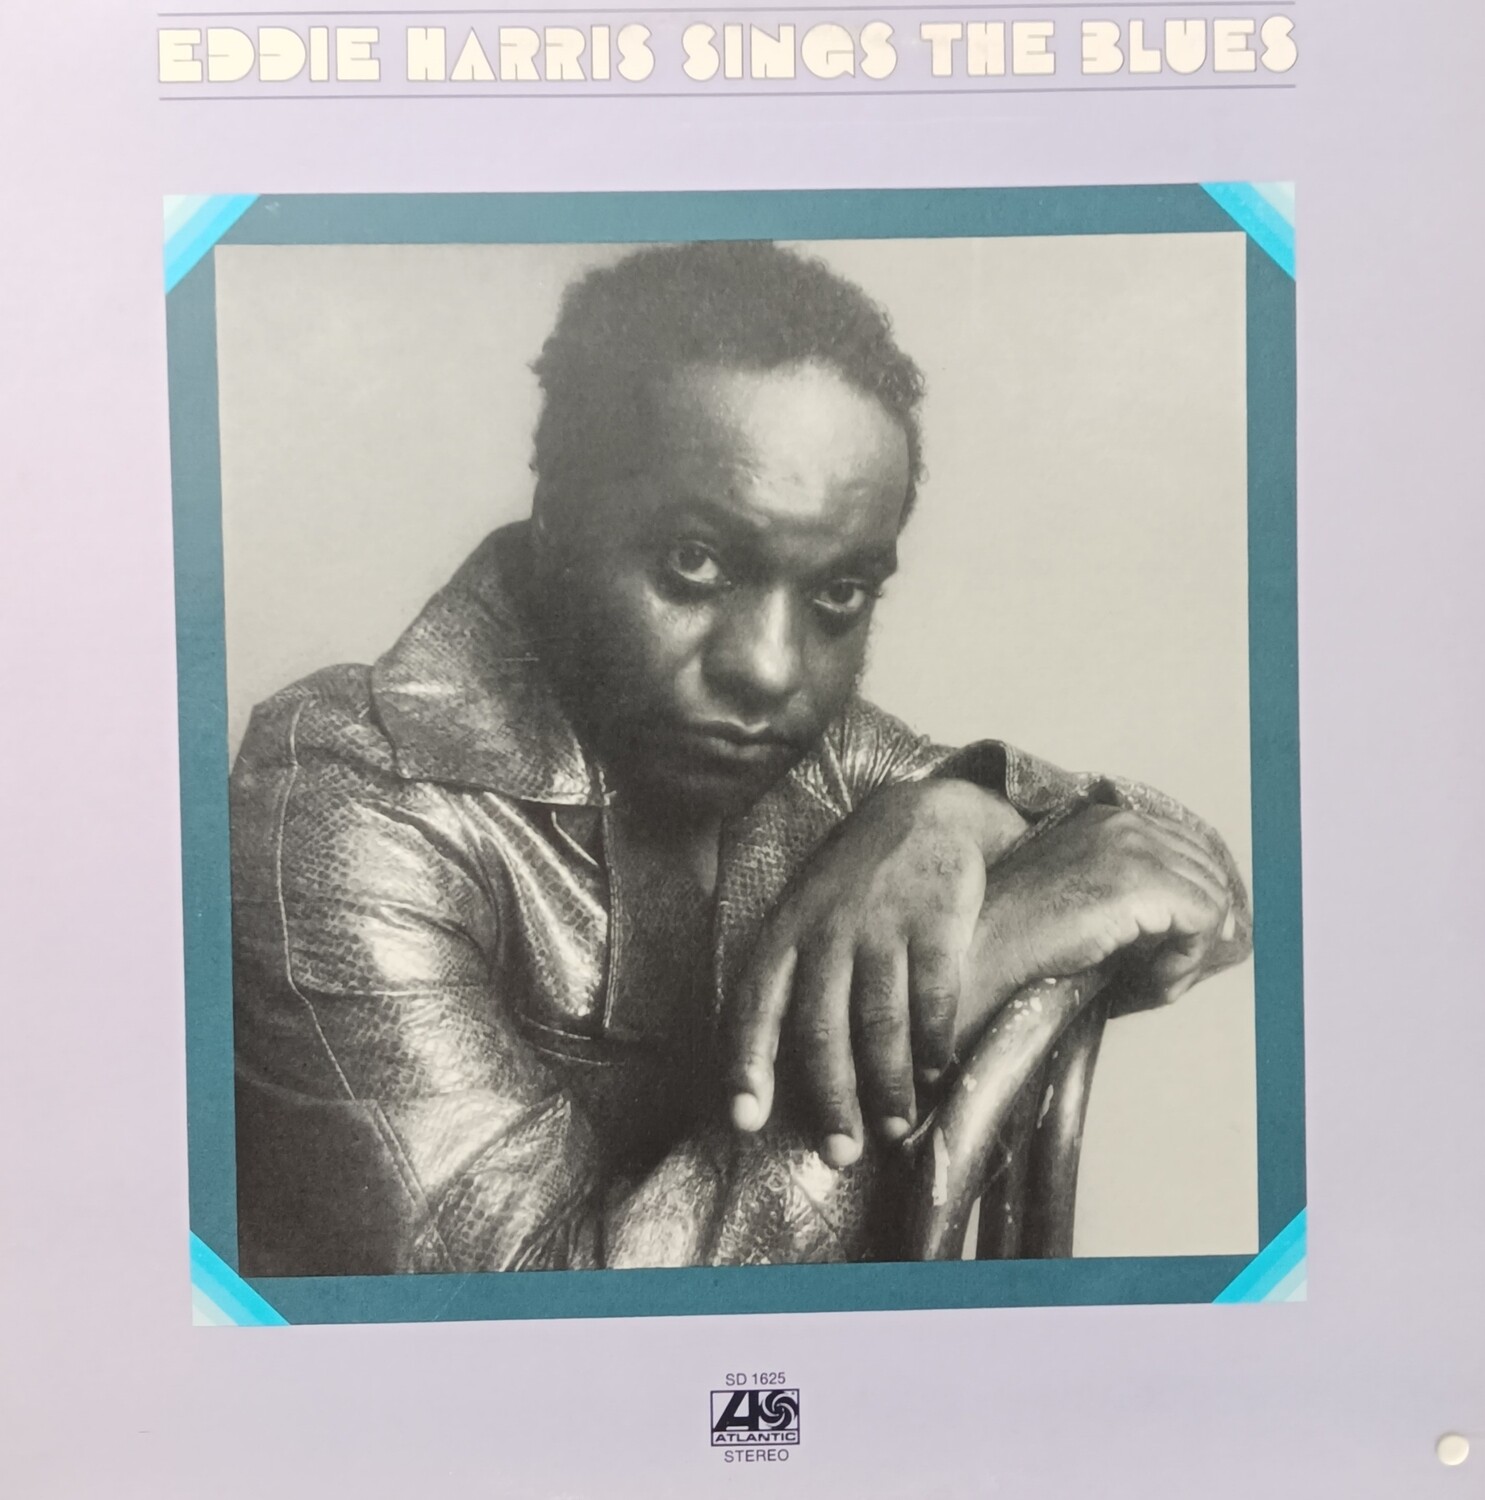 EDDIE HARRIS - Eddie Harris sings the blues